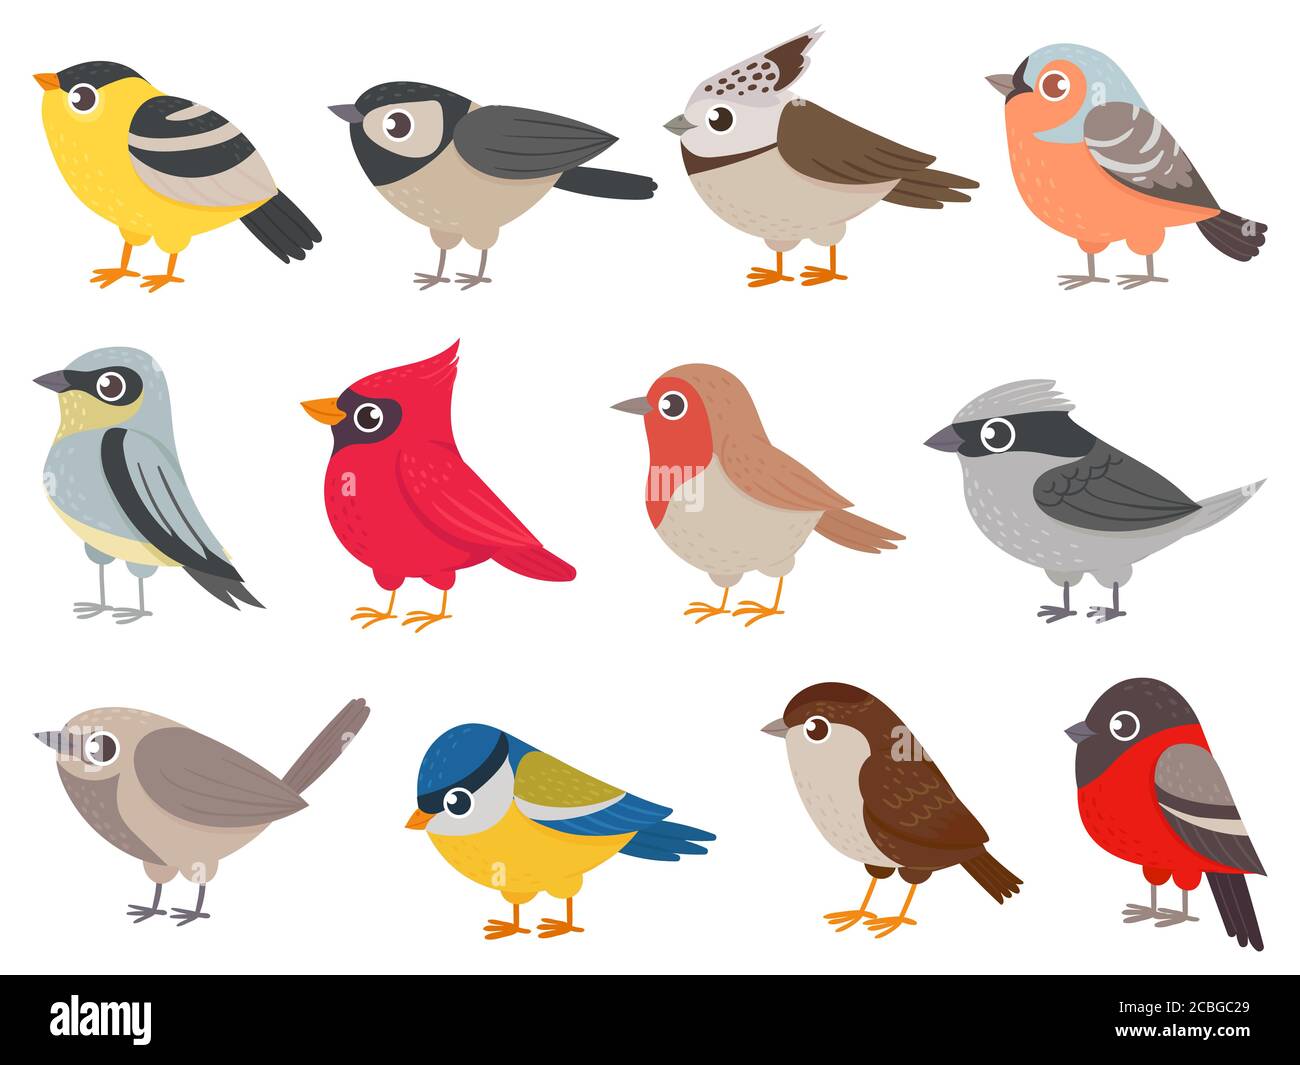 Niedliche Vögel. Handgezeichnete kleine bunte Vögel, Tiere Zeichen für Druckkarte, Gartendekoration. Elemente für kindliche Poster Vektor-Set Stock Vektor